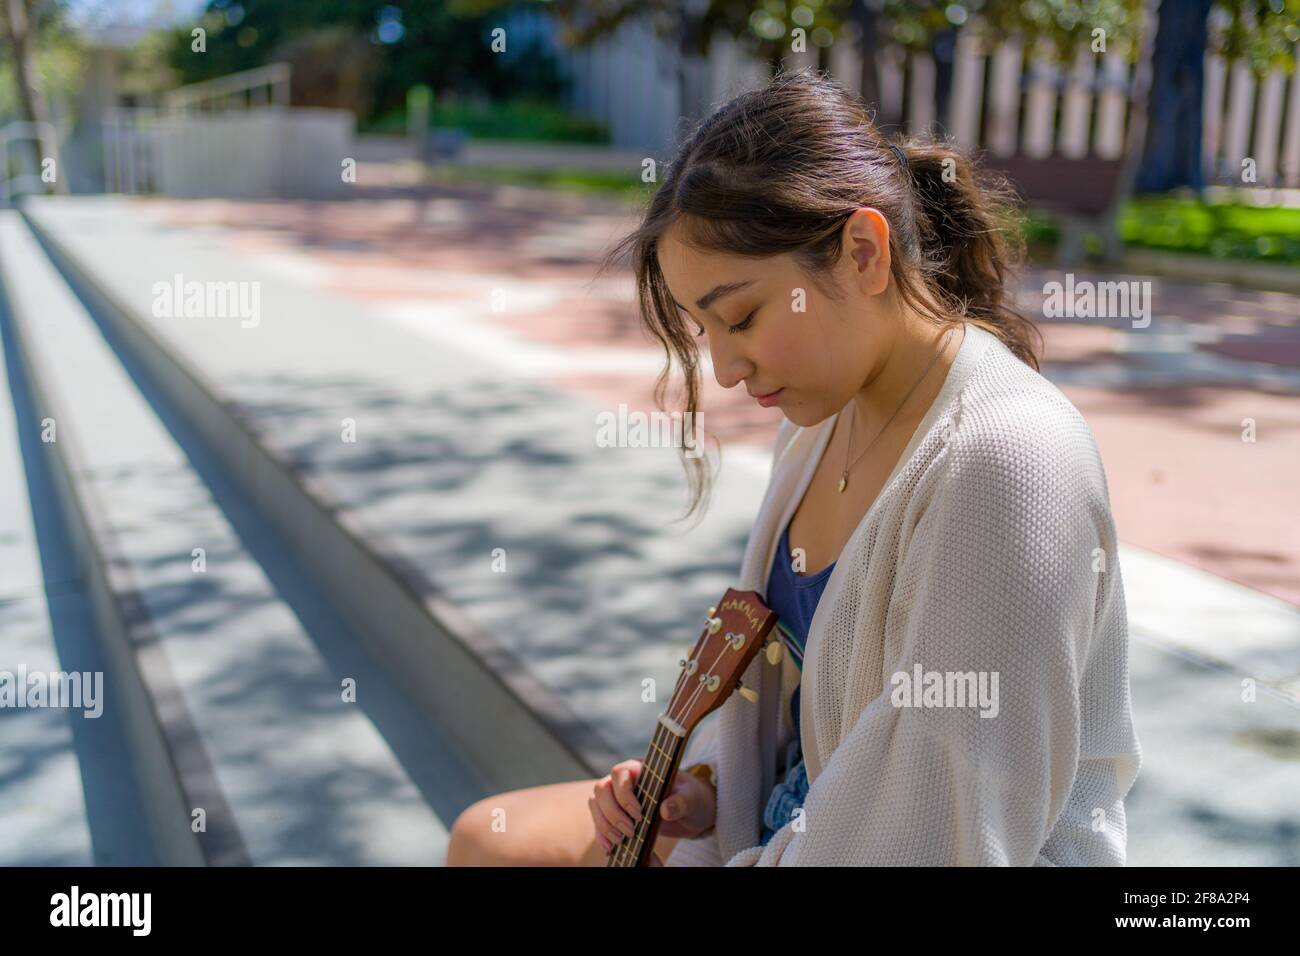 Petite adolescente asiatique assise avec ukulele Banque D'Images